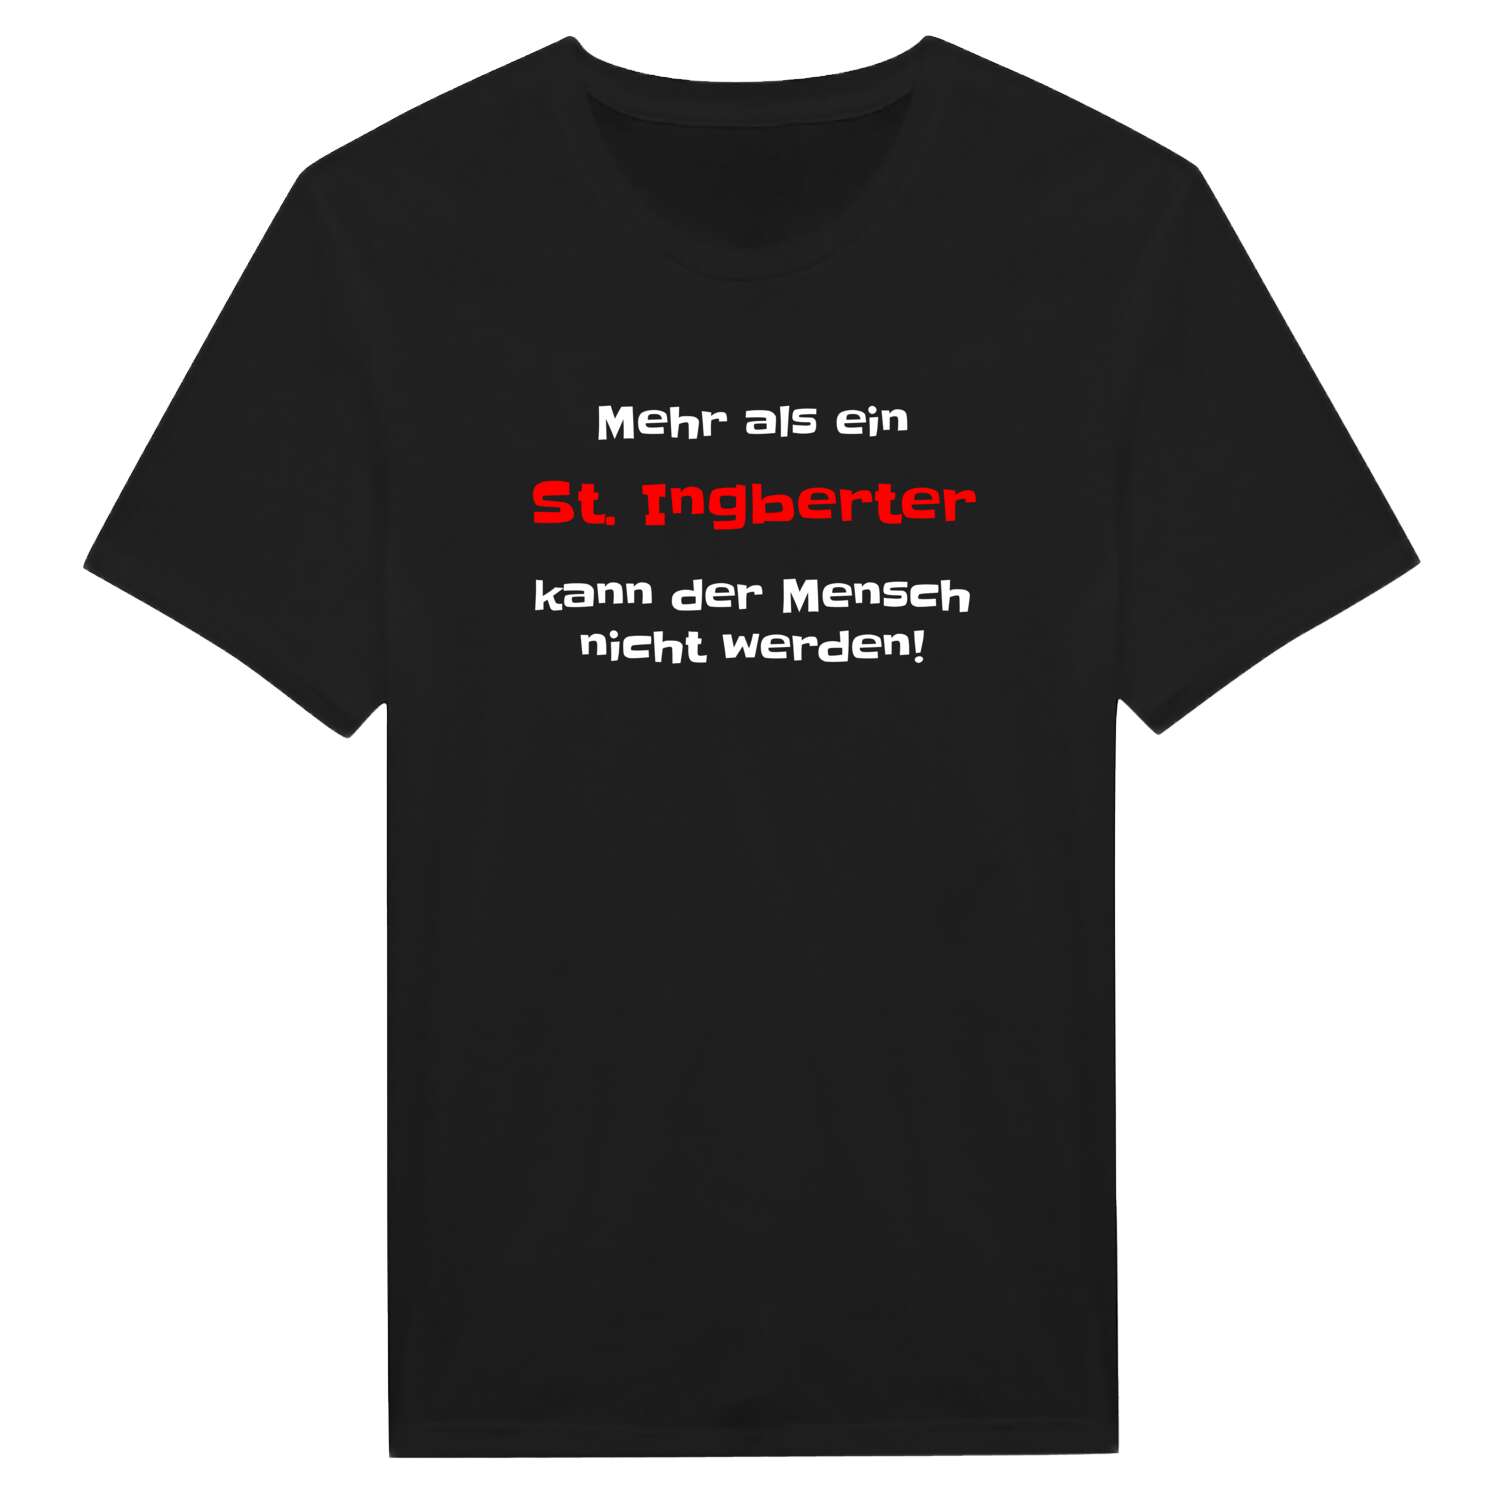 St. Ingbert T-Shirt »Mehr als ein«